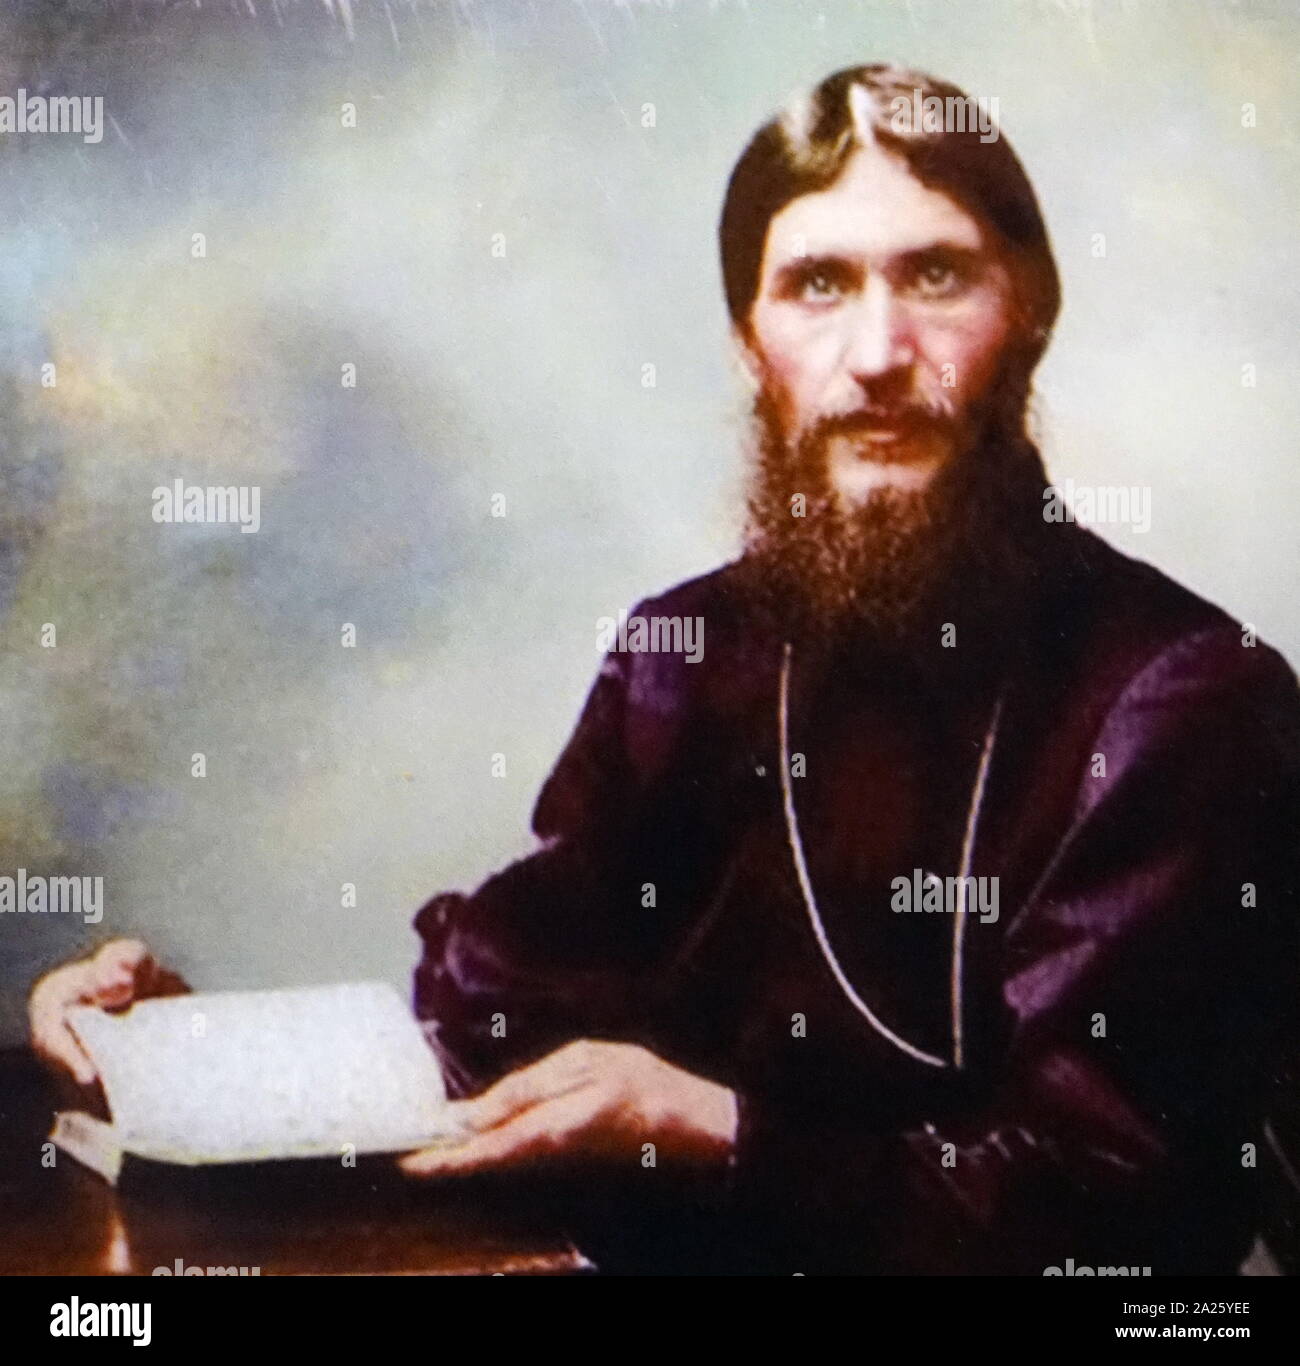 Fotografia a colori di Grigori Rasputin. Grigori Yefimovich Rasputin (1869-1916) un russo mistica e auto-proclamato santo-uomo, che ha avuto grande influenza nel tardo Impero russo. Foto Stock